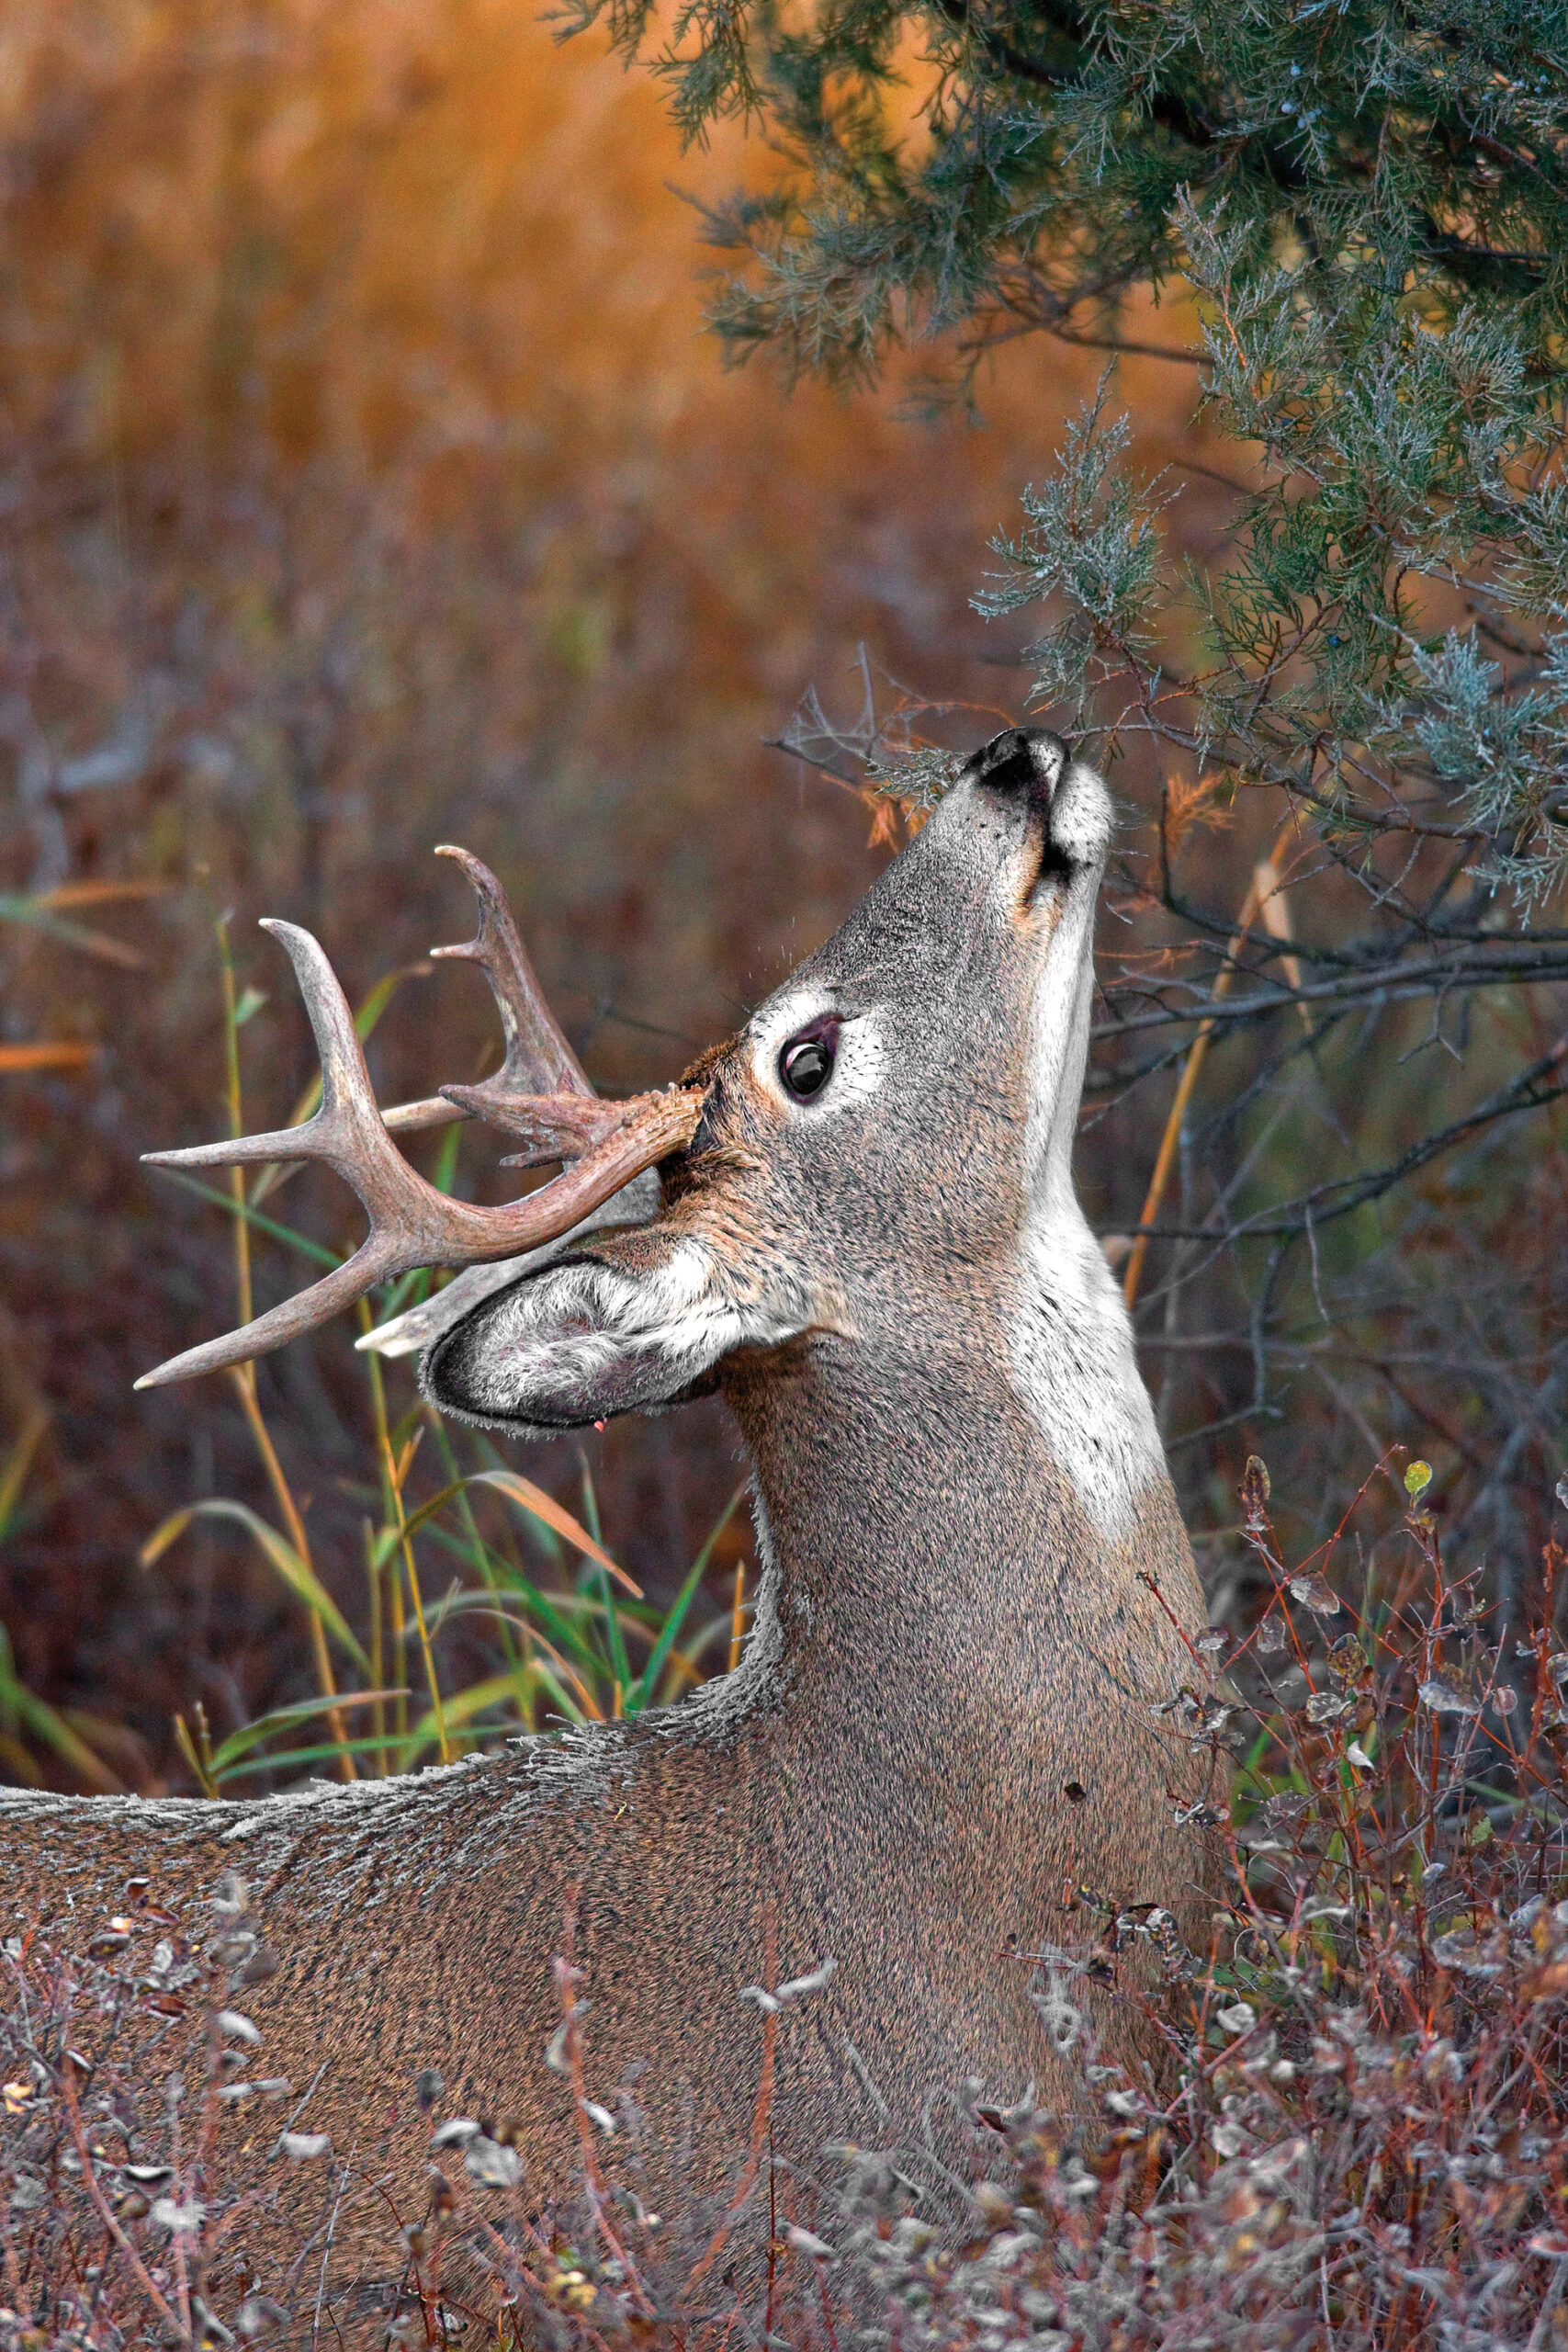 Using deer scents for bucks